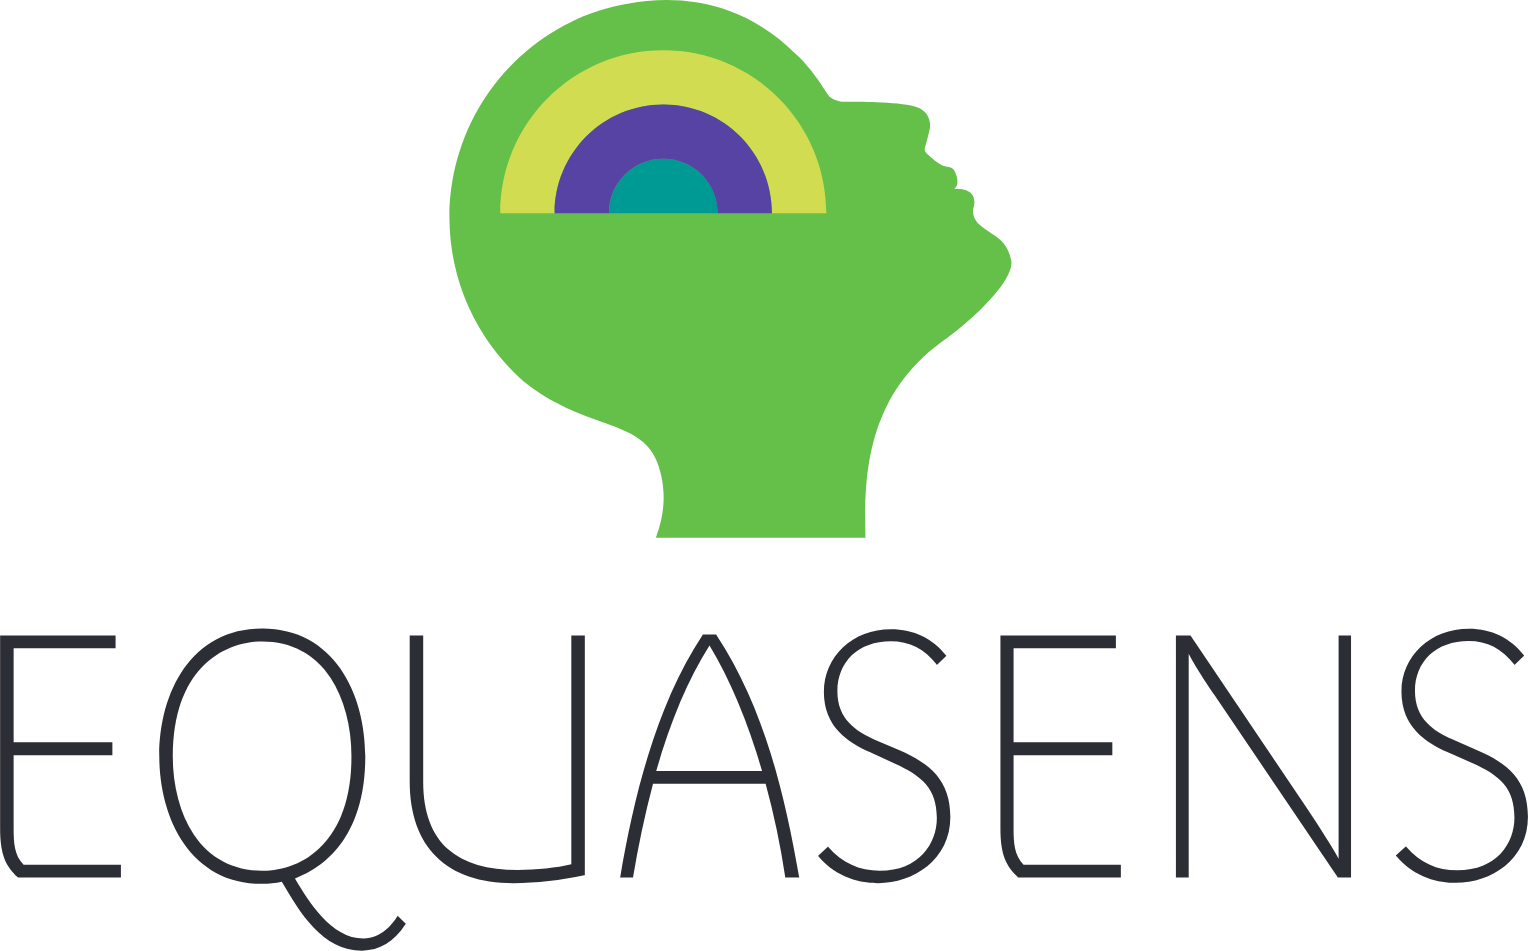 Equasens logo large (transparent PNG)